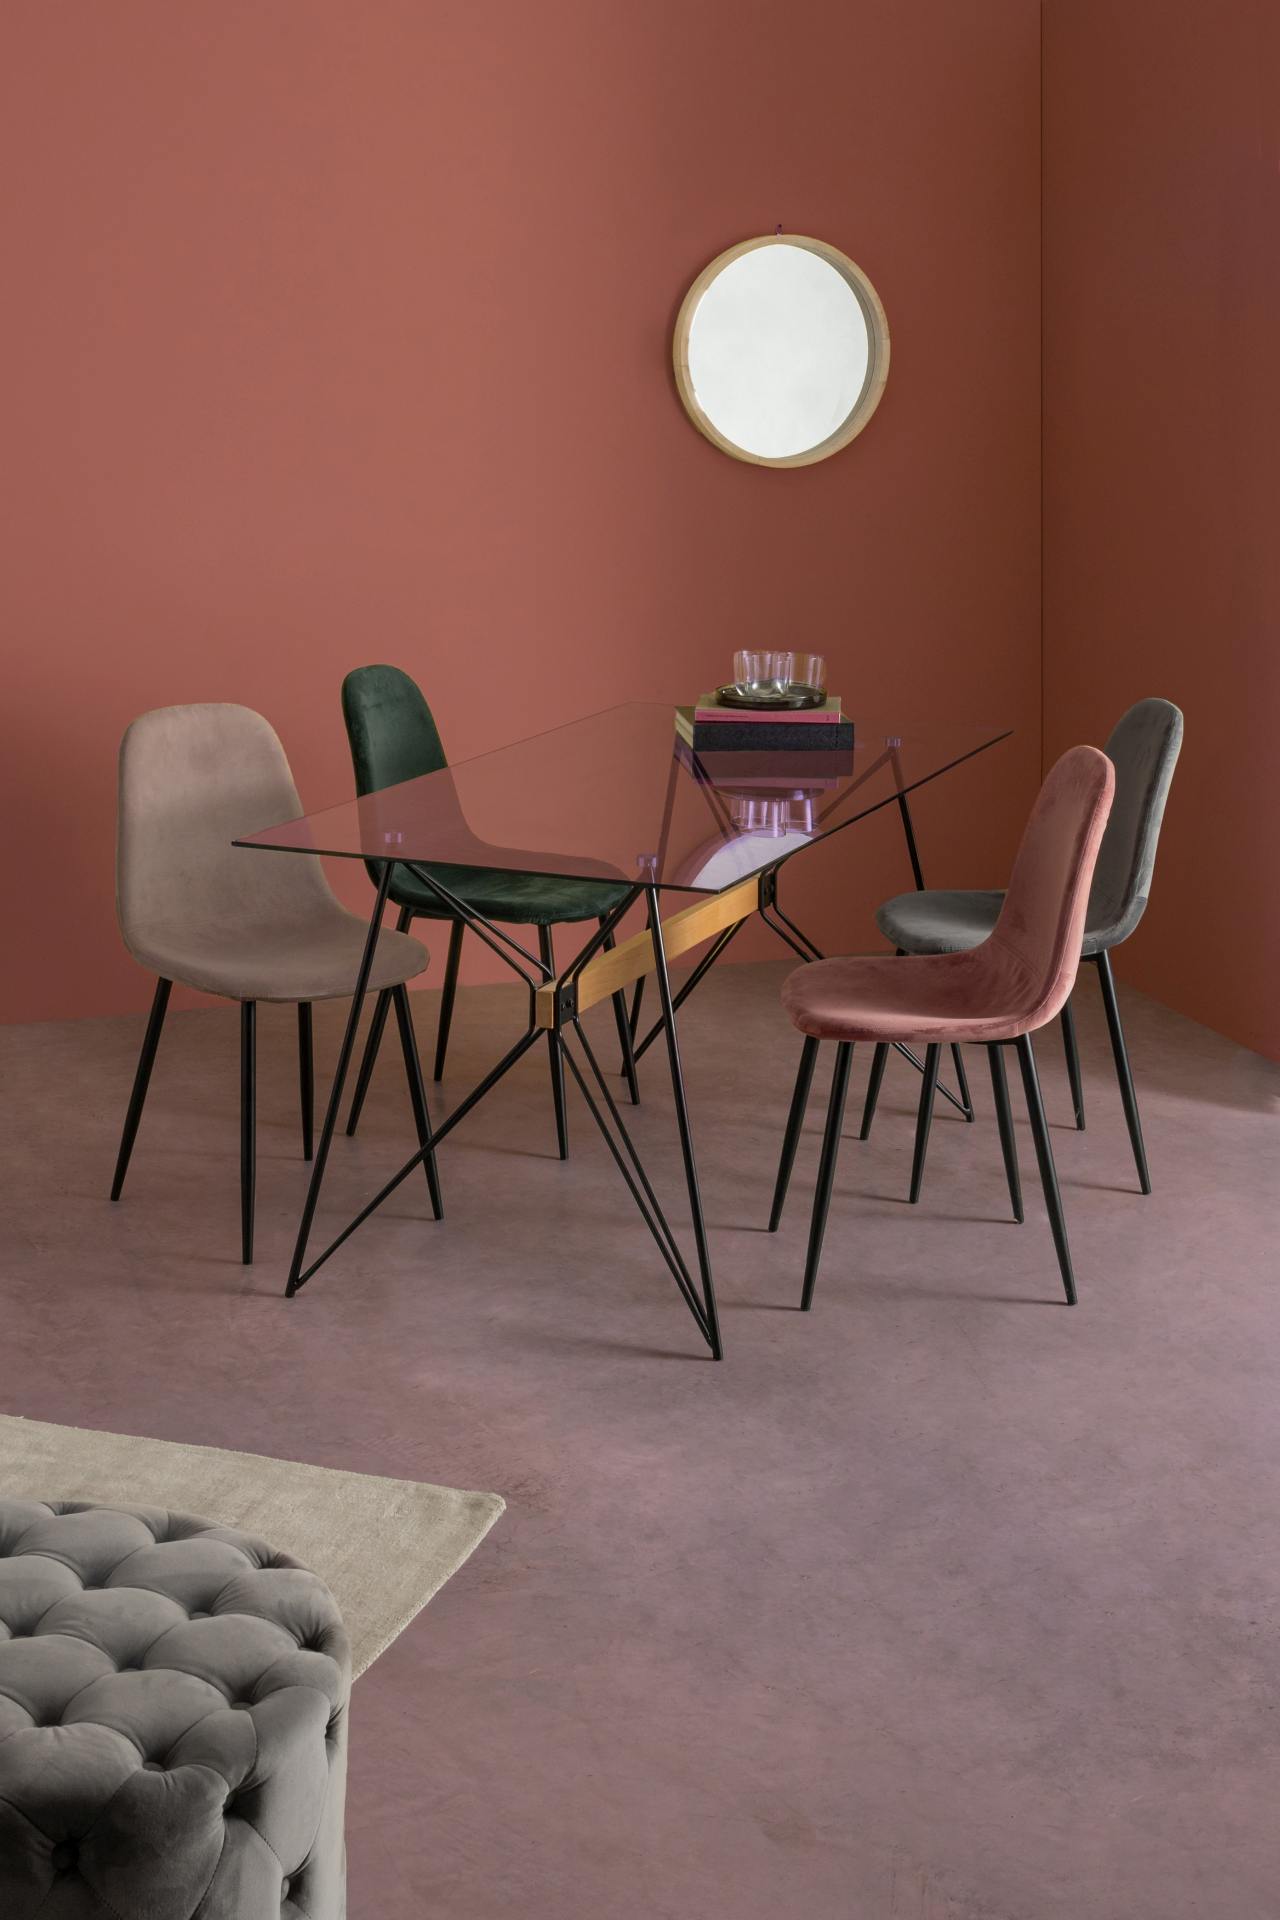 Der Esszimmerstuhl Irelia überzeugt mit seinem modernem Design. Gefertigt wurde der Stuhl aus einem Samt-Bezug, welcher einen dunkelgrünen Farbton besitzt. Das Gestell ist aus Metall und ist schwarz. Die Sitzhöhe beträgt 47 cm.